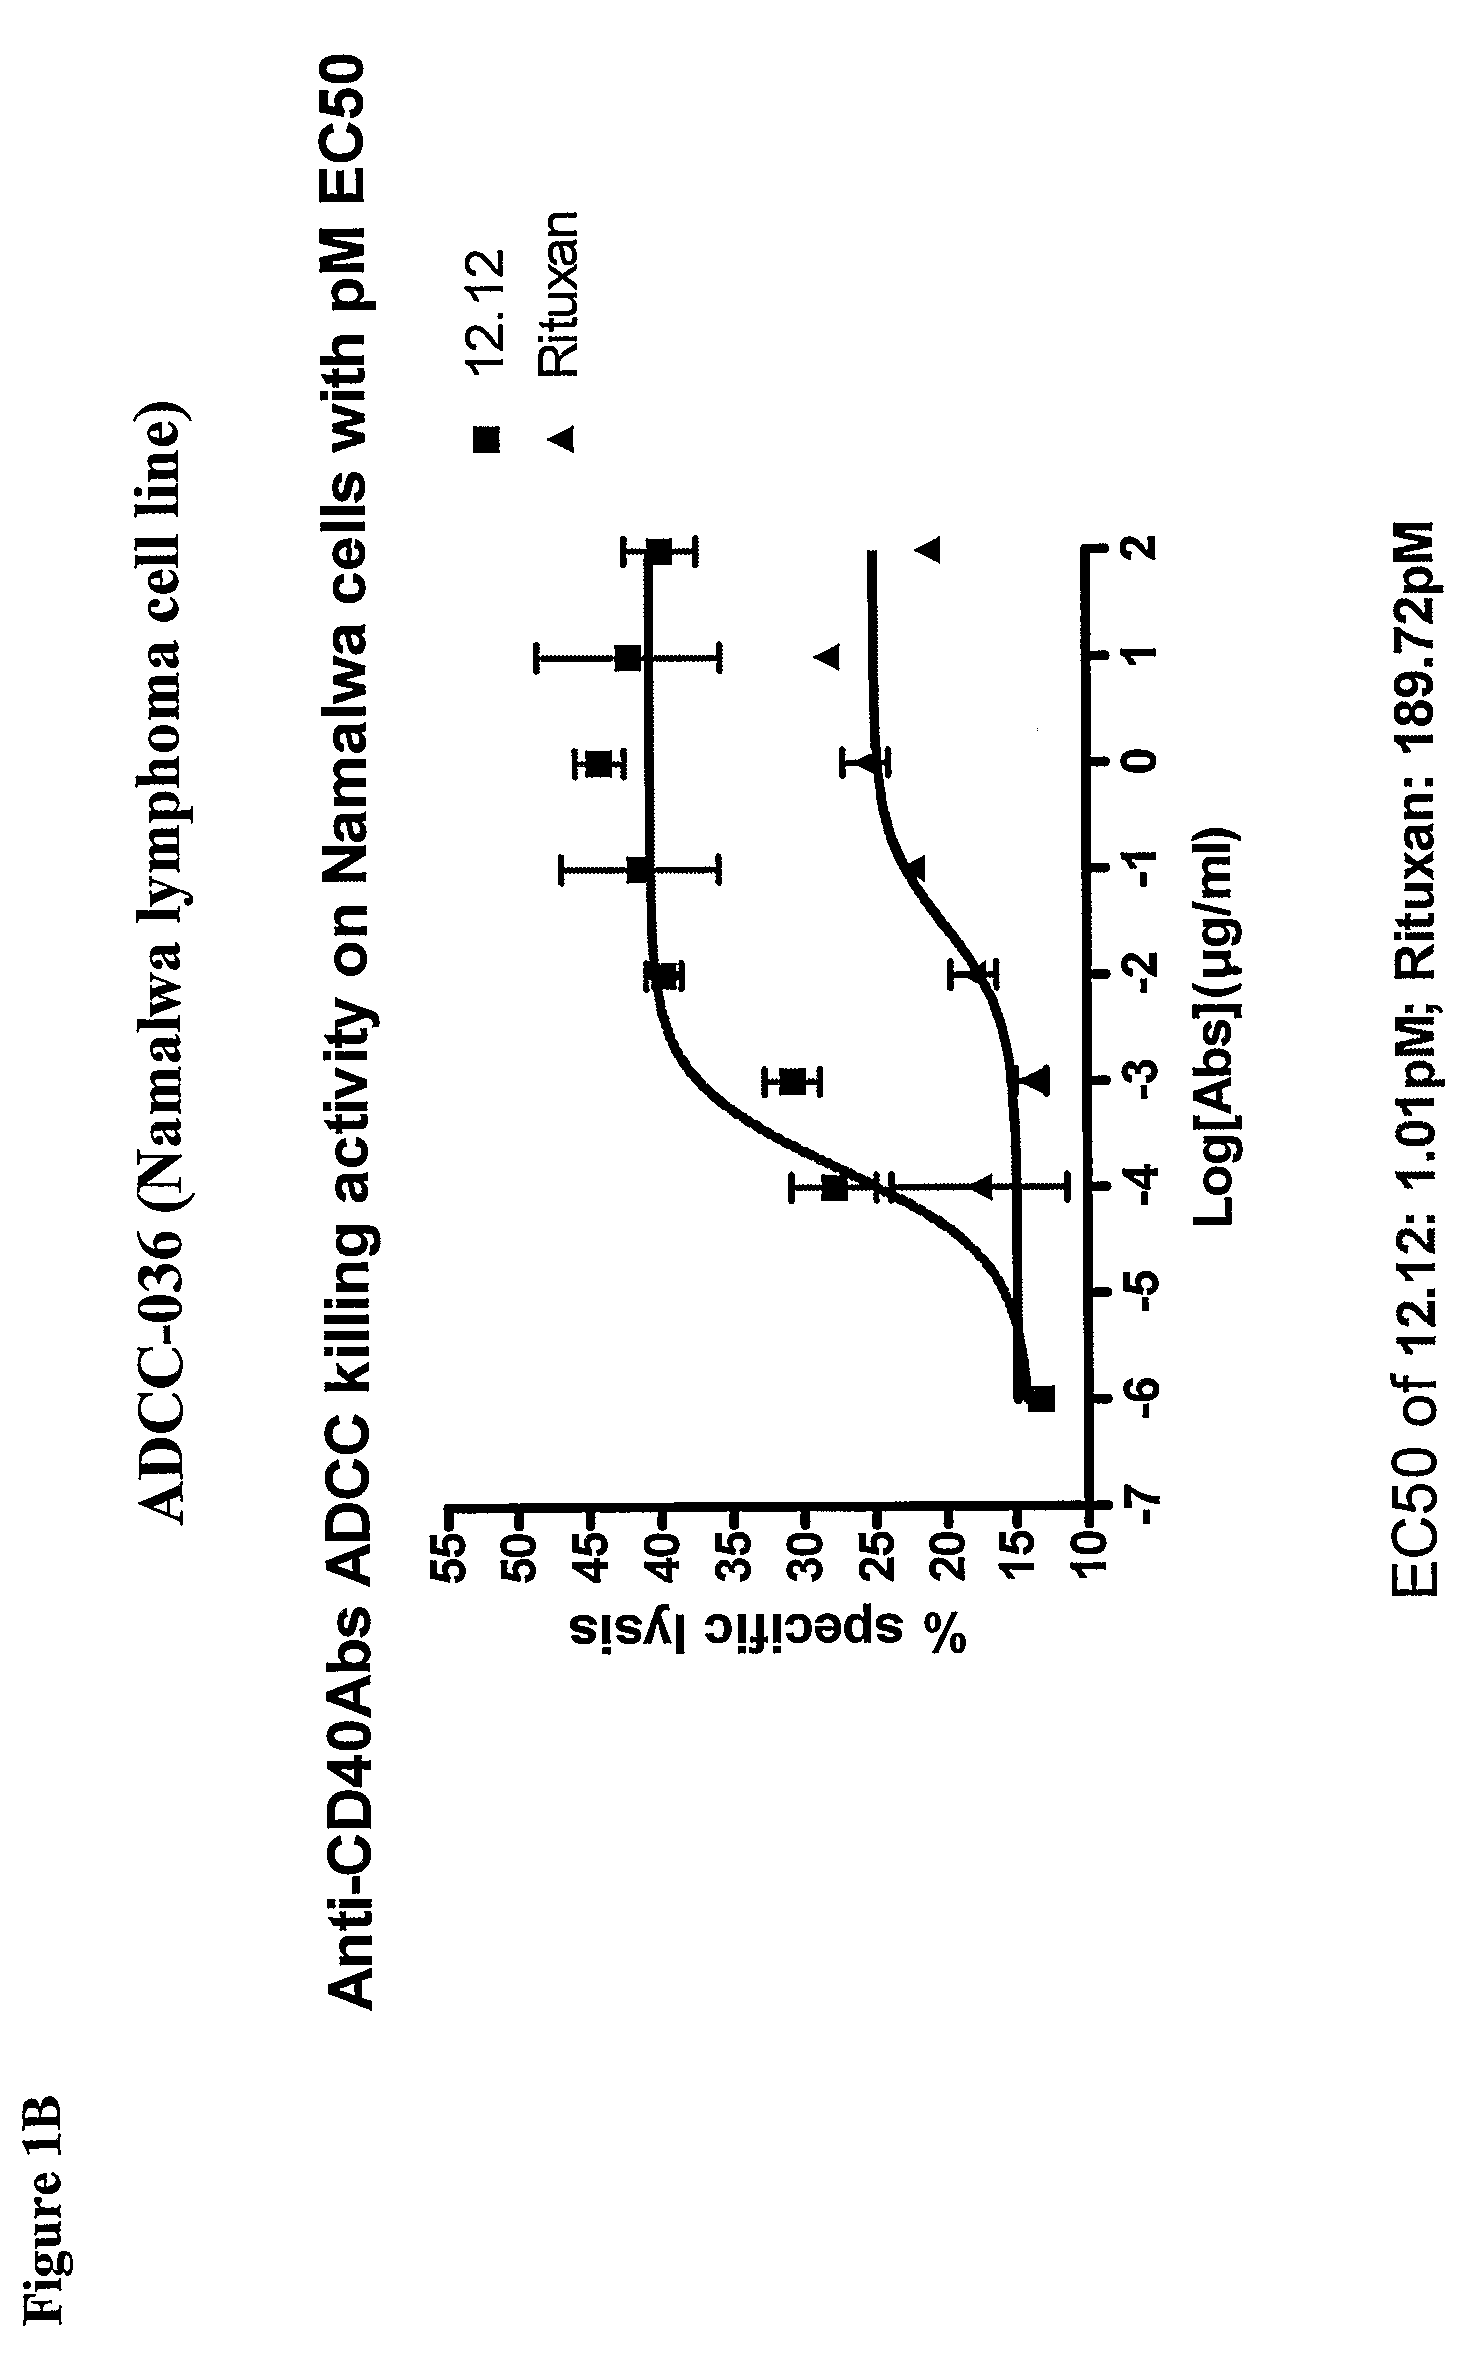 Uses of Anti-CD40 antibodies